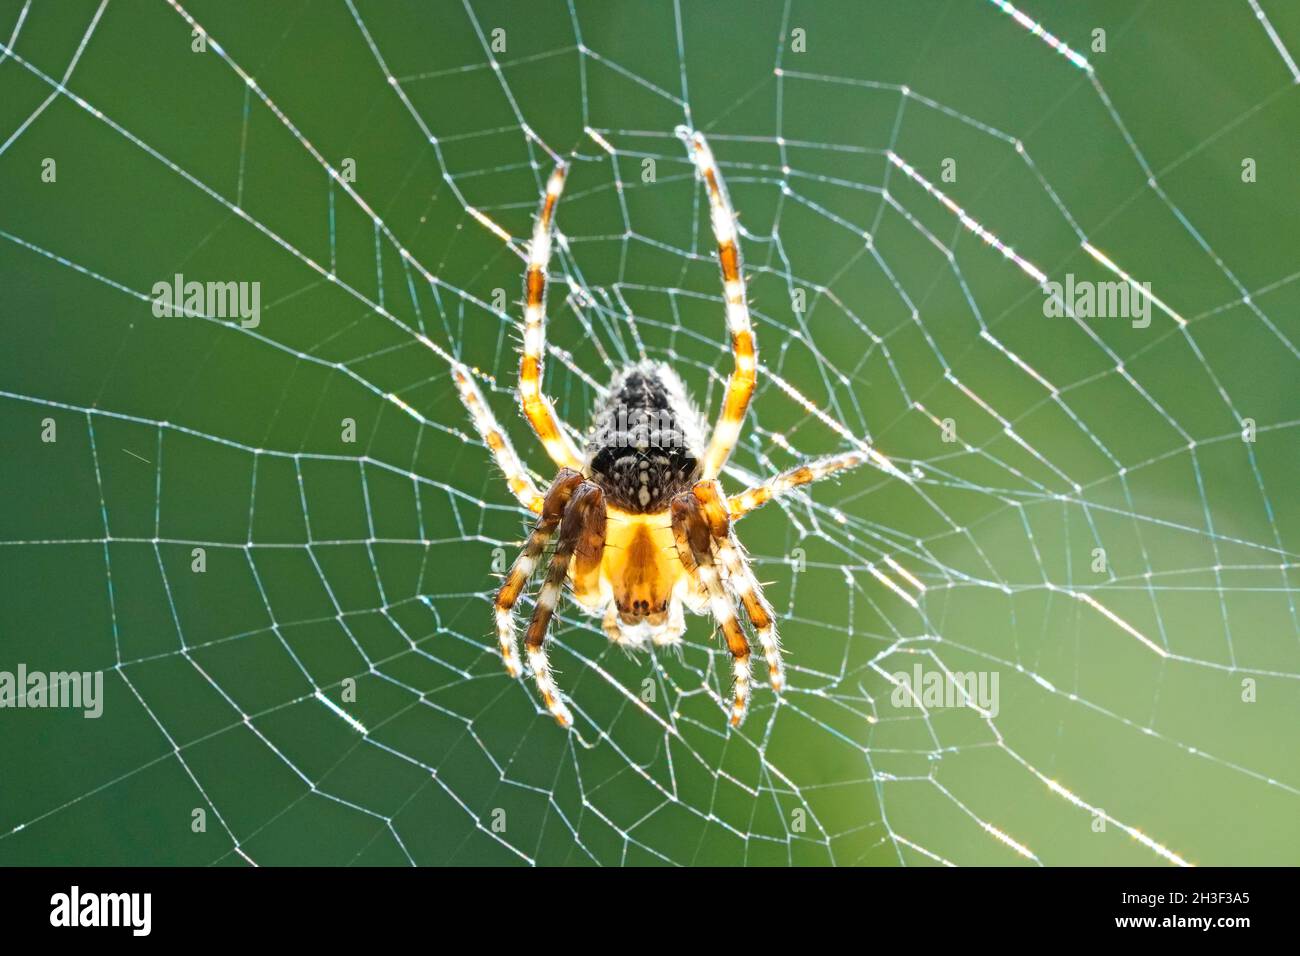 Primo piano di un ragno da giardino, Araneus diadematus. Il ragno trasversale è appeso nel nastro su uno sfondo verde. Foto Stock